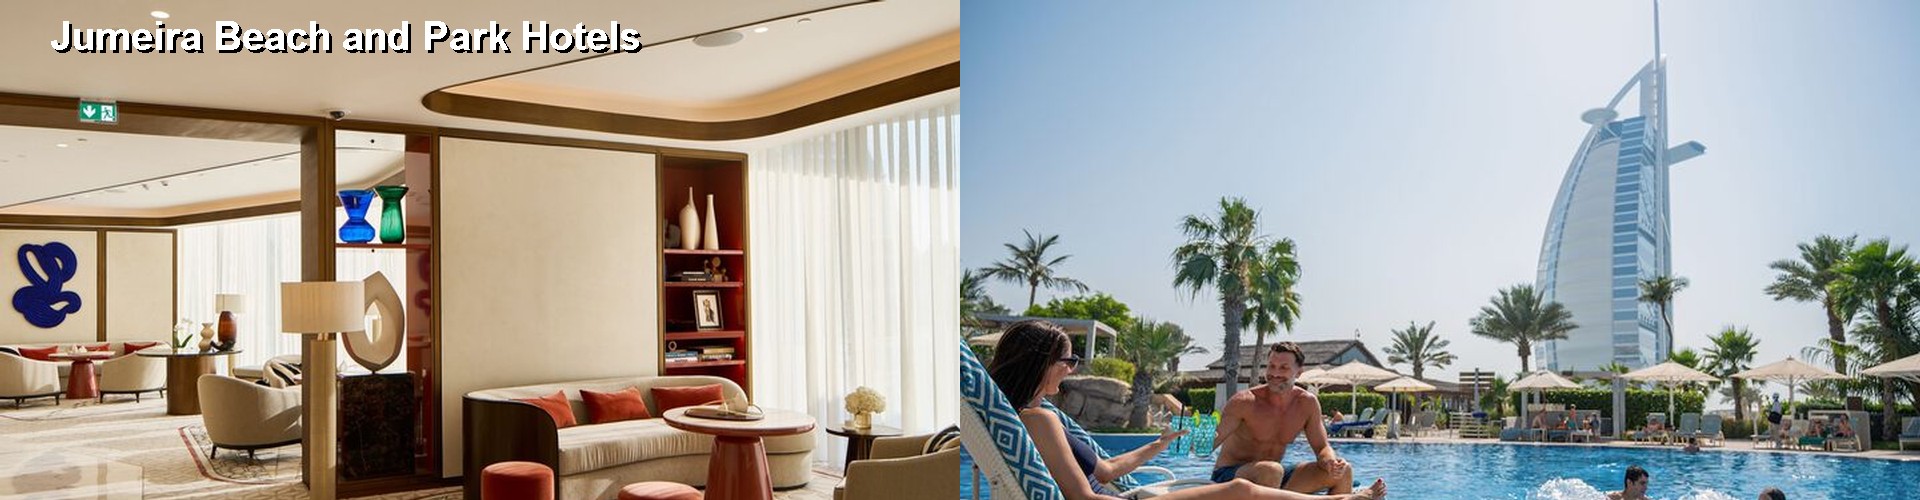 5 Best Hotels near Jumeira Beach and Park